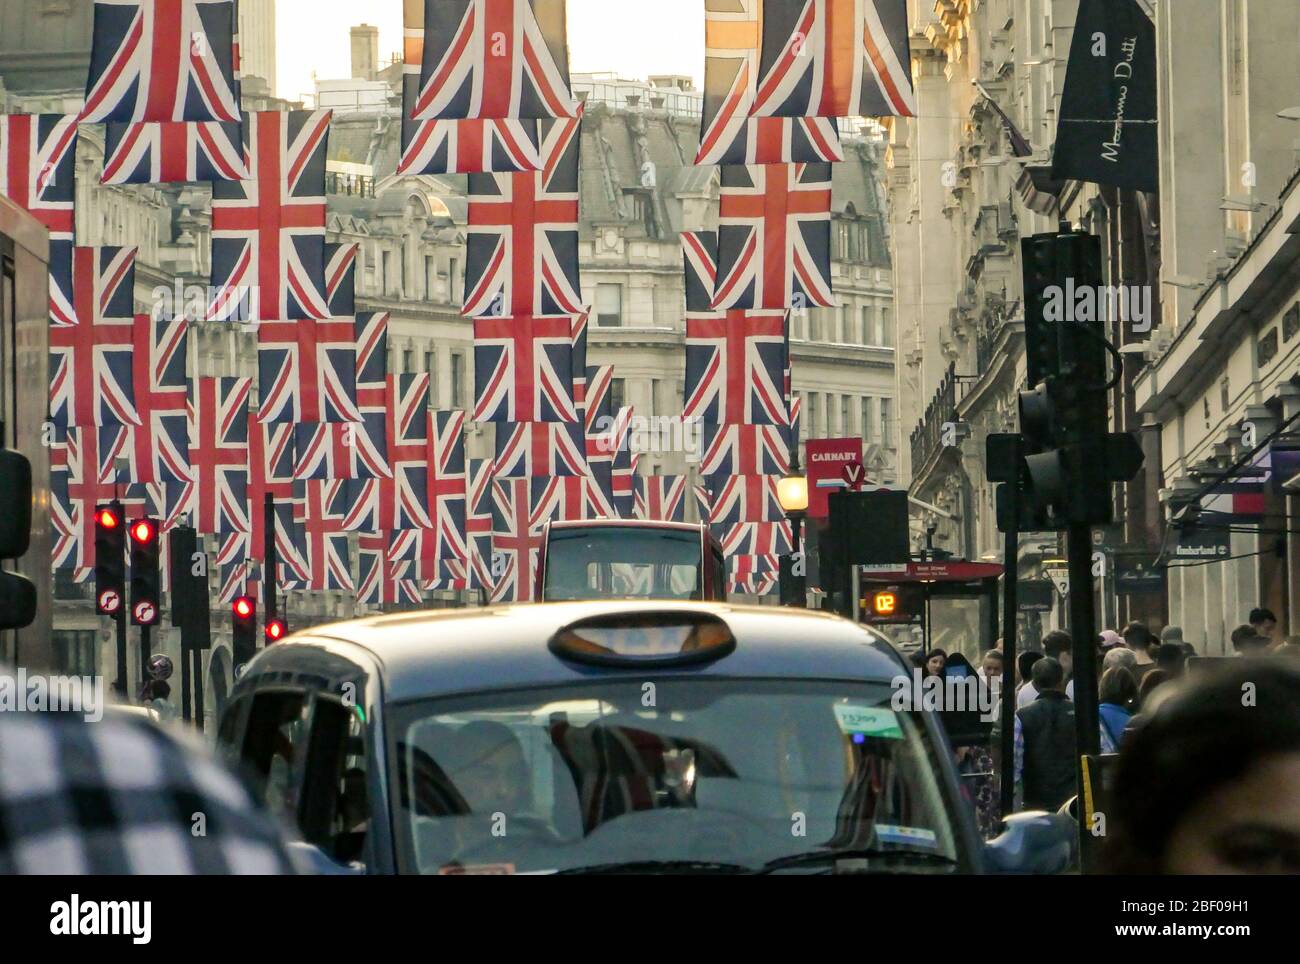 LONDRA - bandiere britanniche su Regent Street, una destinazione di riferimento per il commercio al dettaglio nel West End di Londra Foto Stock